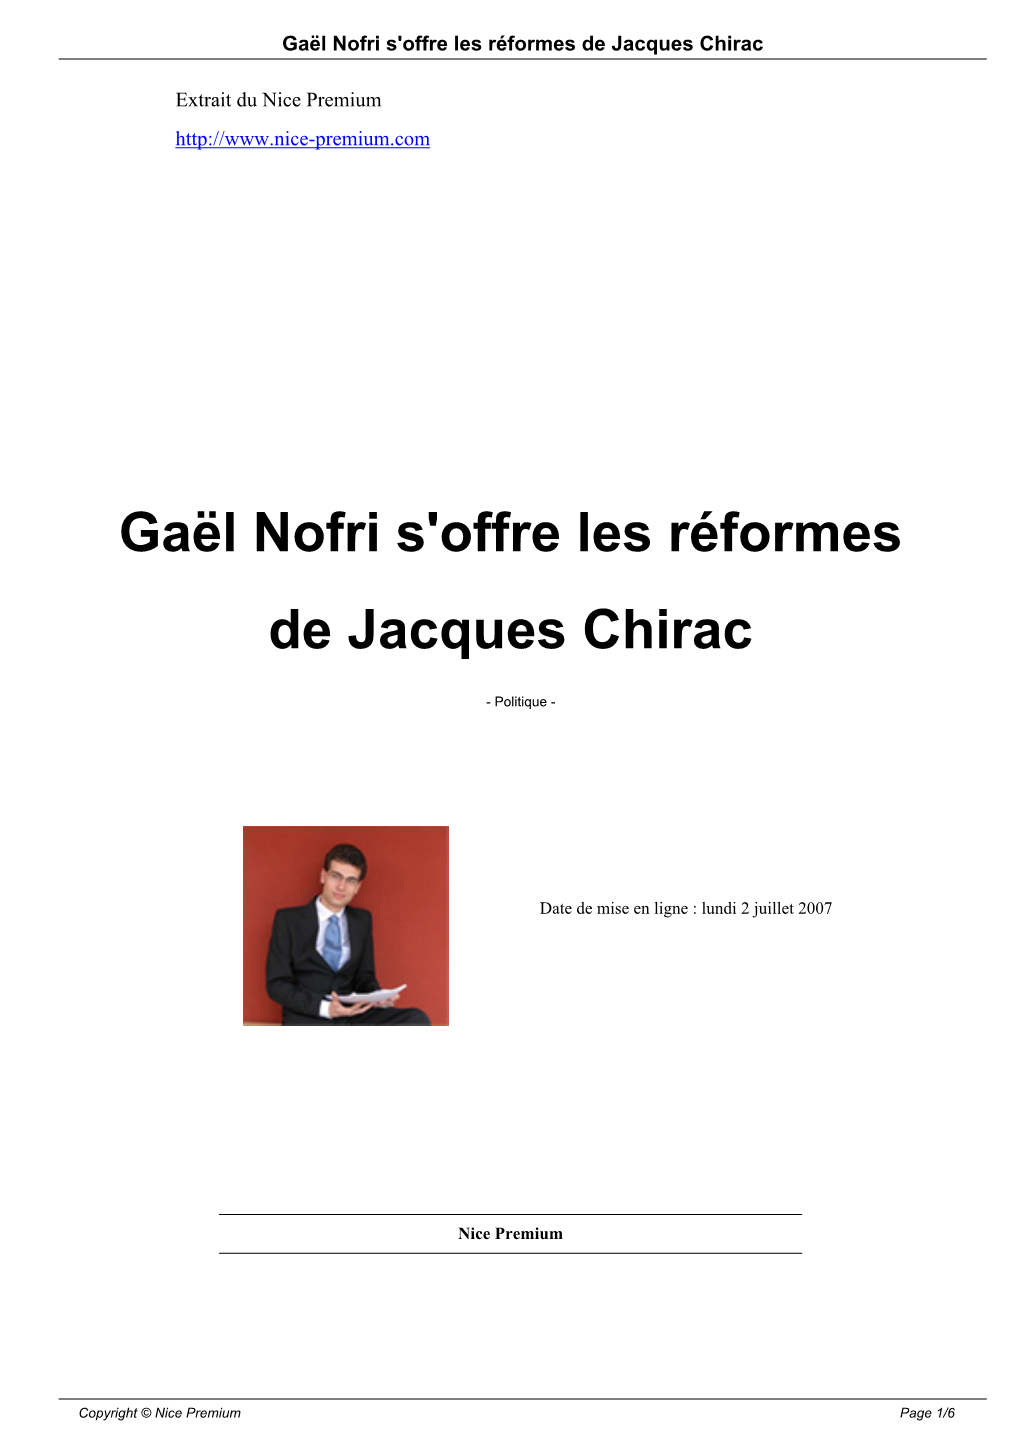 Gaël Nofri S'offre Les Réformes De Jacques Chirac